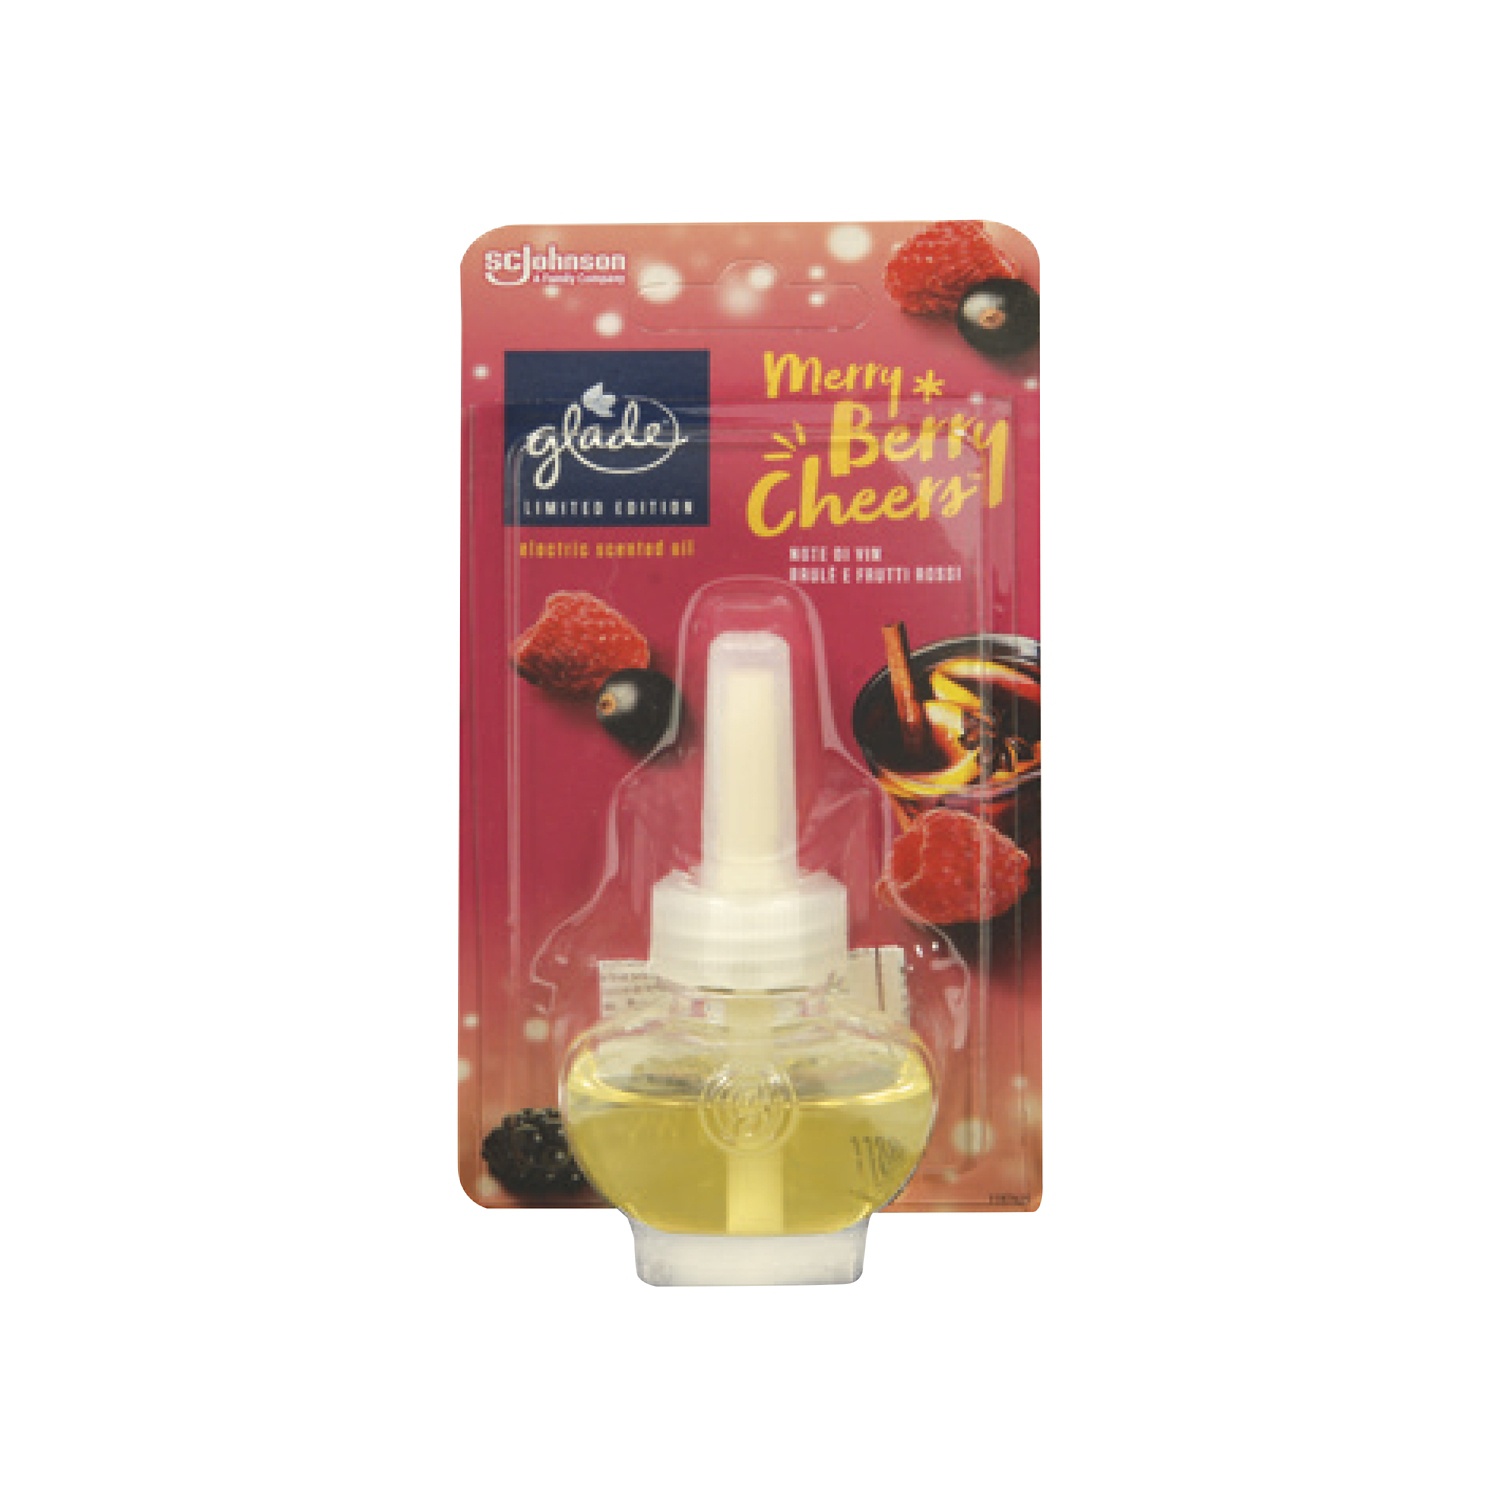 Glade Fragranza Profumata per Diffusore Elettrico Scented Oil - Relaxing  Zen, glade diffusore